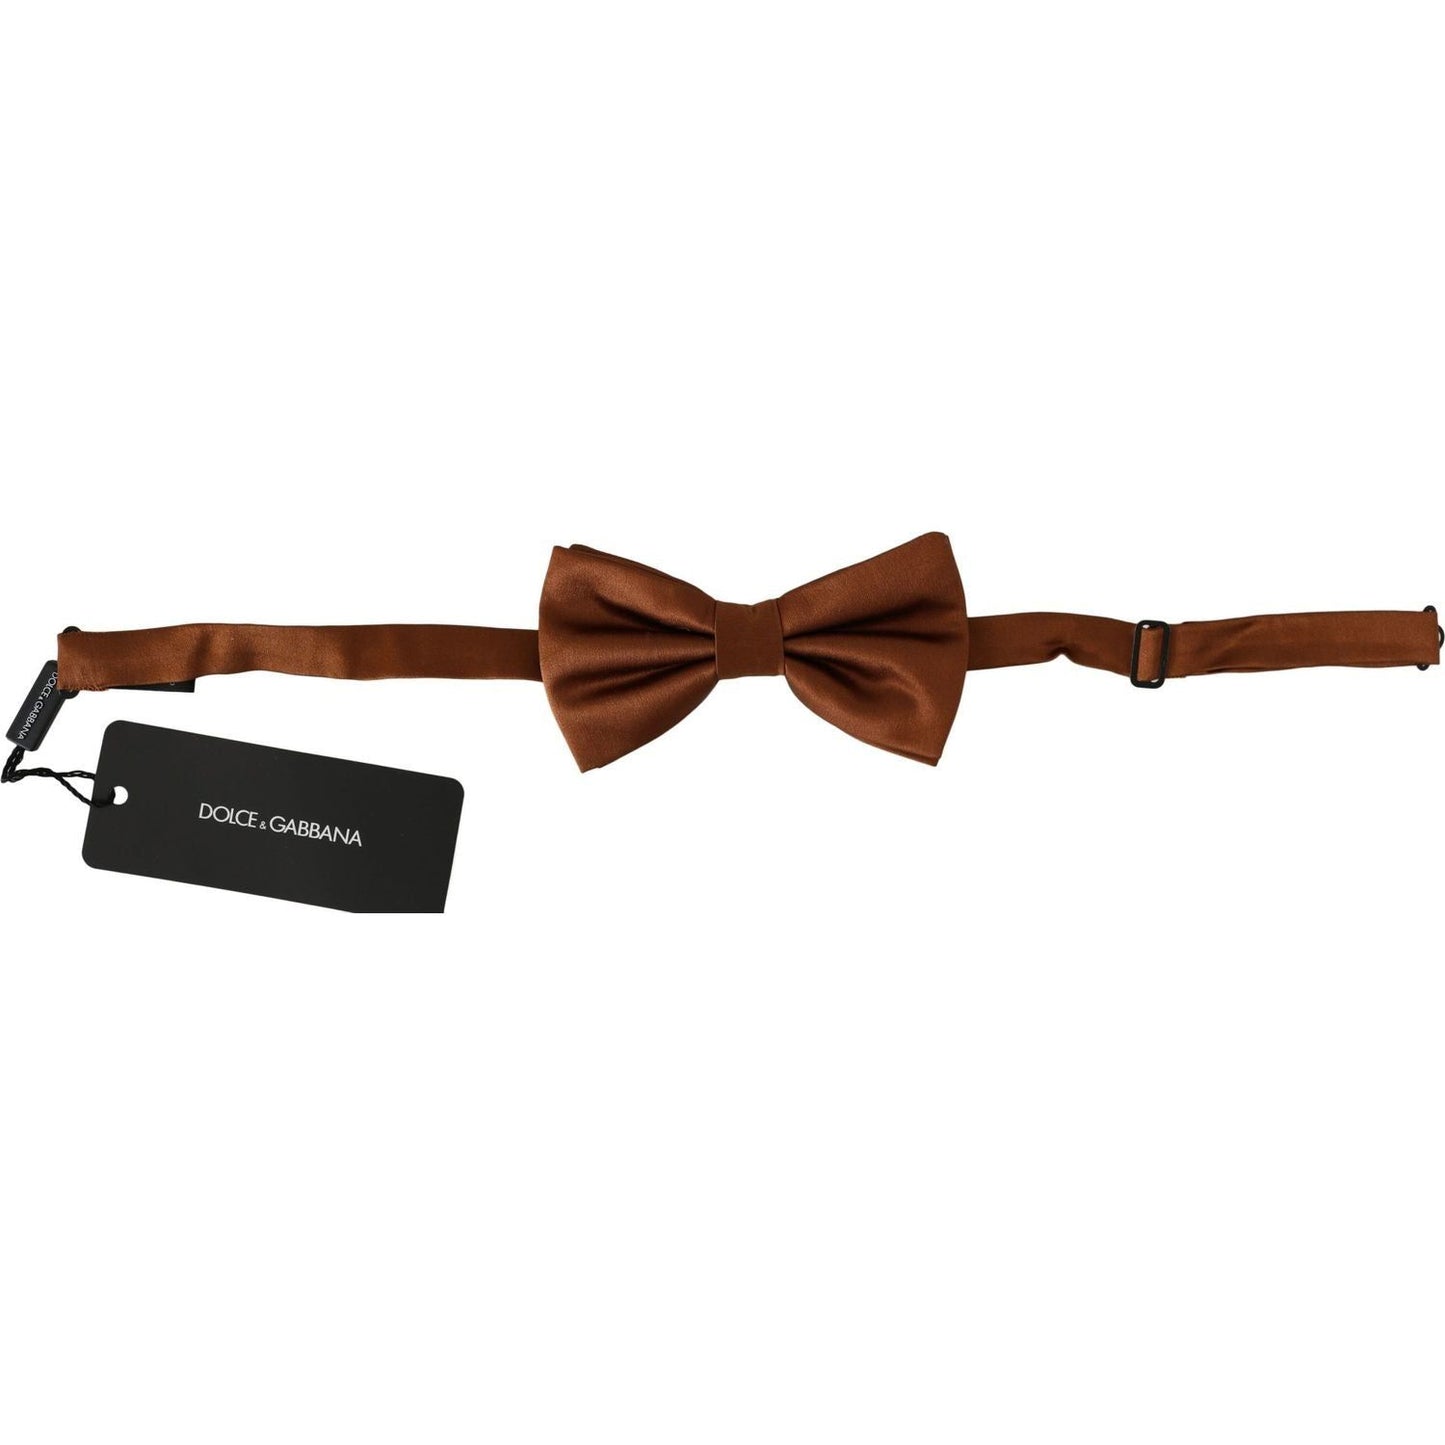 Dolce & Gabbana Elegant Silk Bow Tie in Bronze Elegance Bow Tie men-brown-100-silk-adjustable-neck-papillon-bow-tie-1